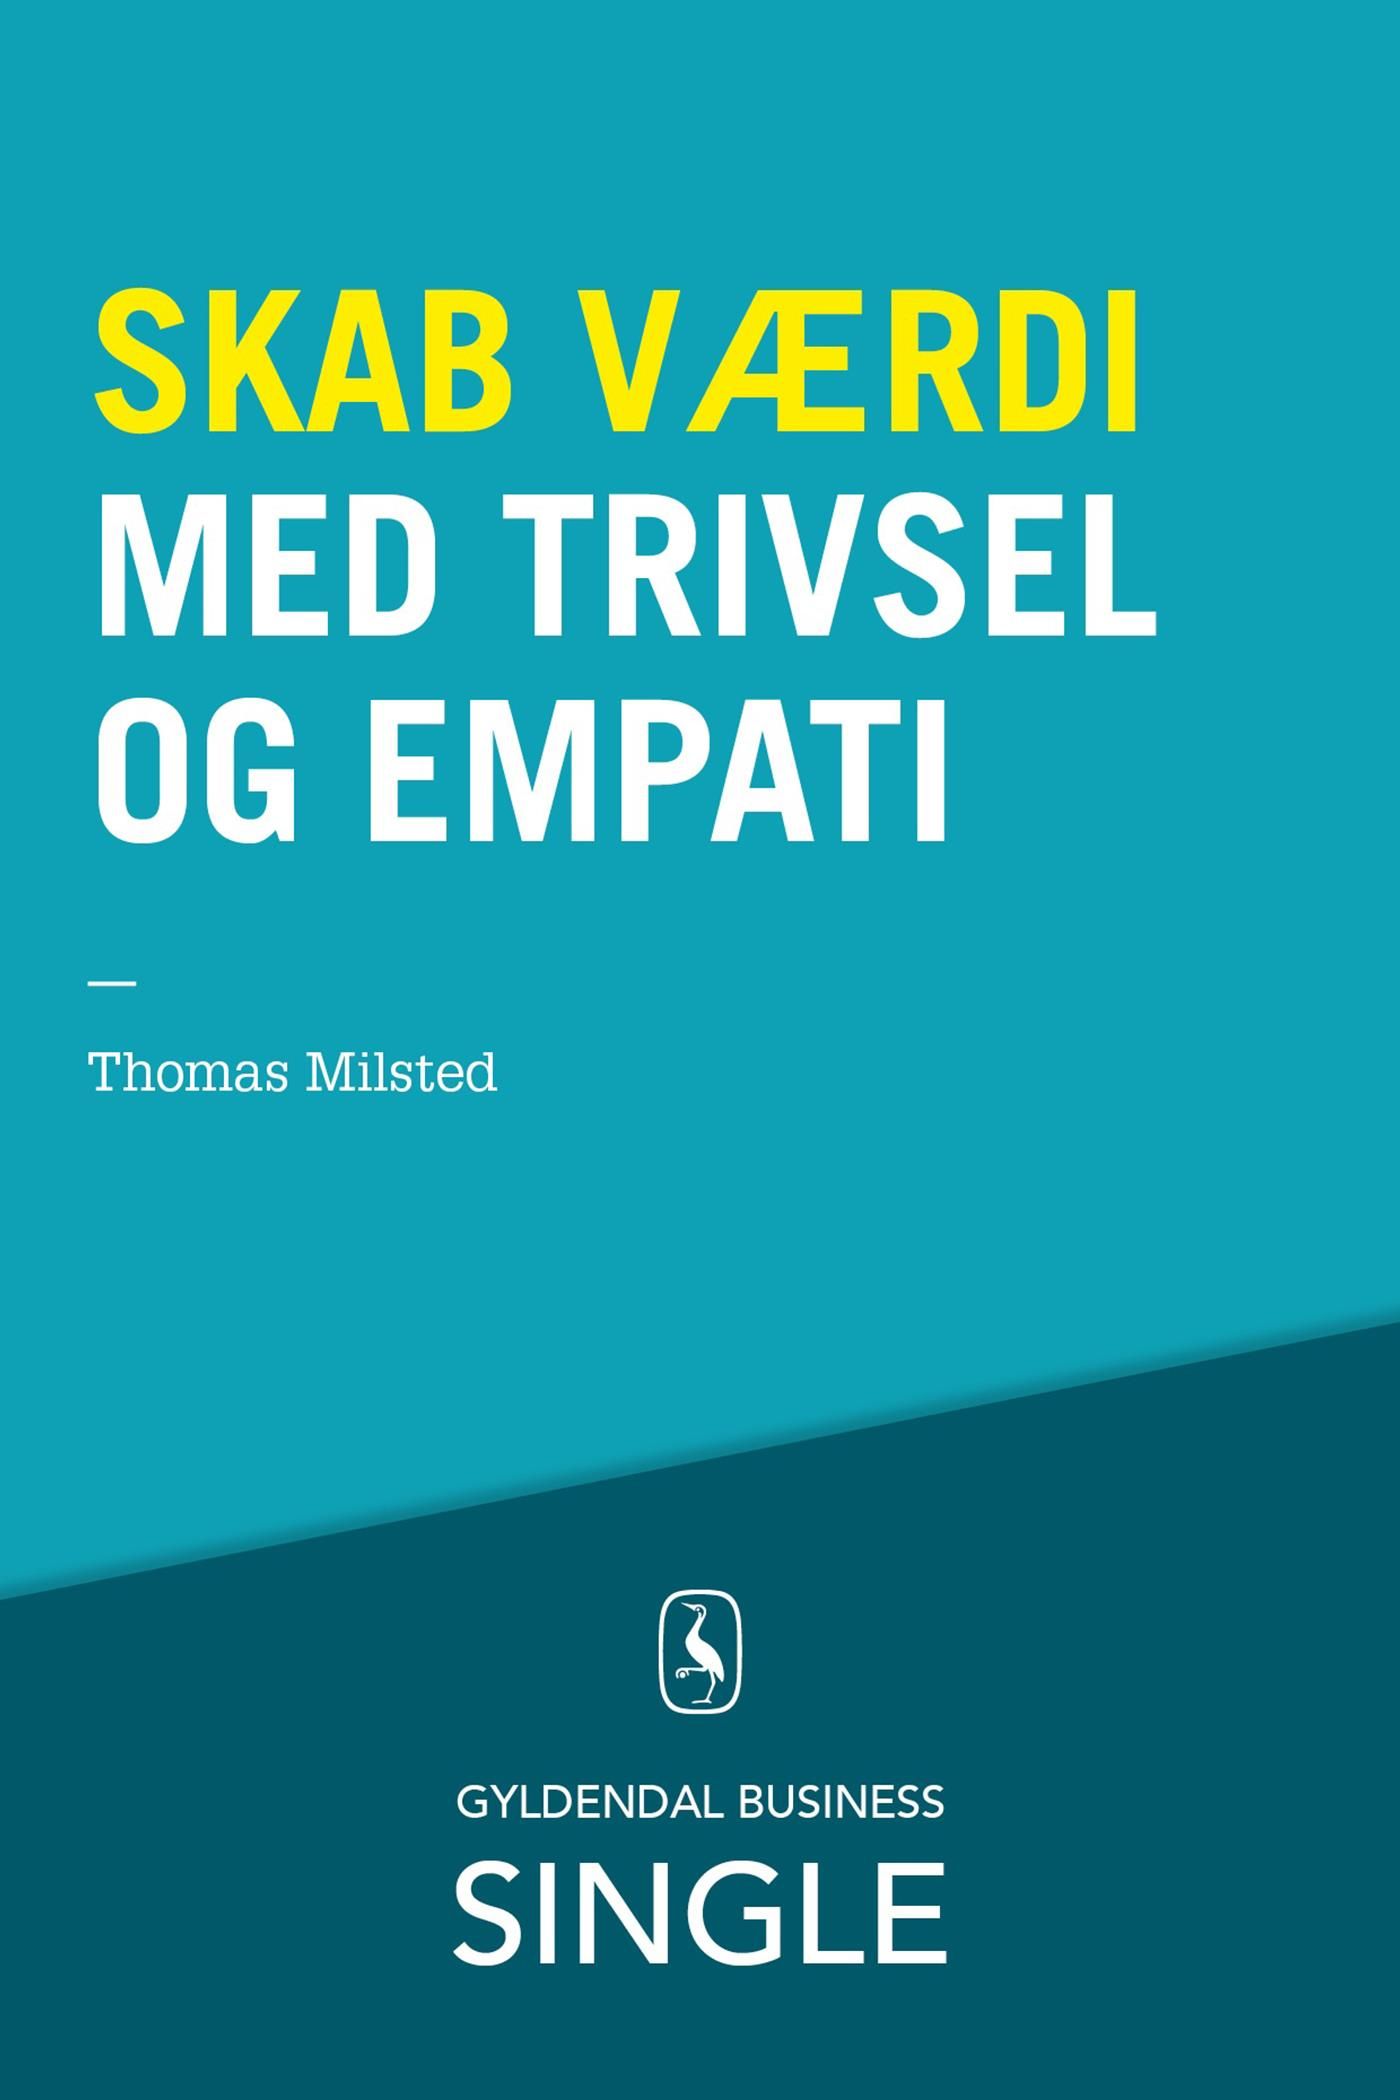 Skab værdi med trivsel og empati, e-bog af Thomas Milsted